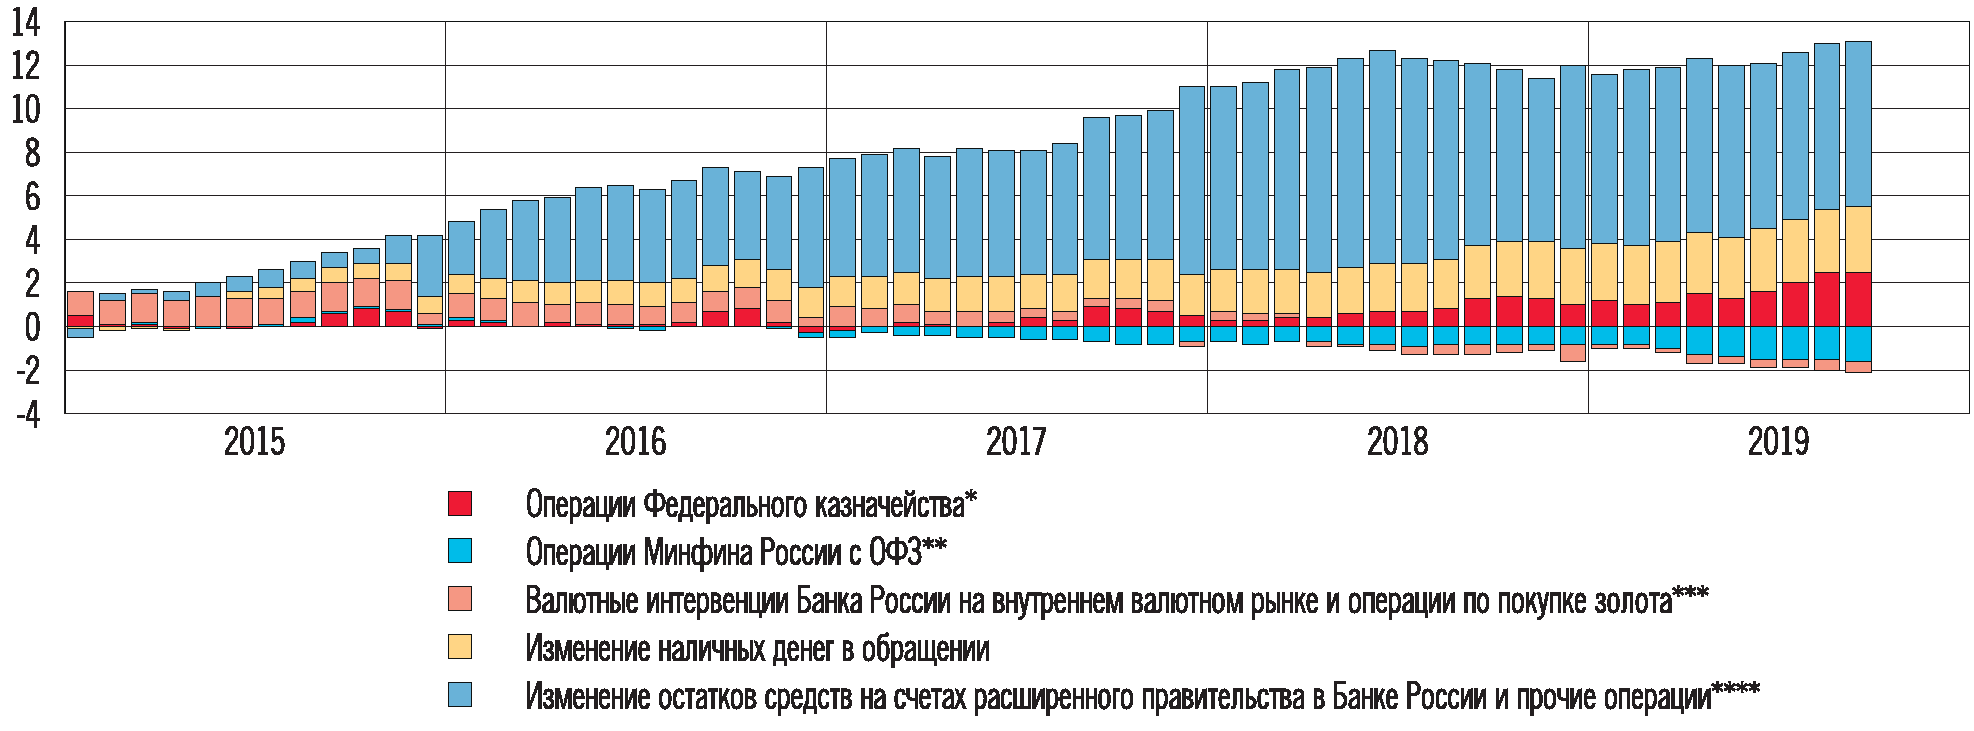 Курсовая работа: Факторы, влияющие на спрос и предложение в условиях российского рынка. Статистика динамики спрос